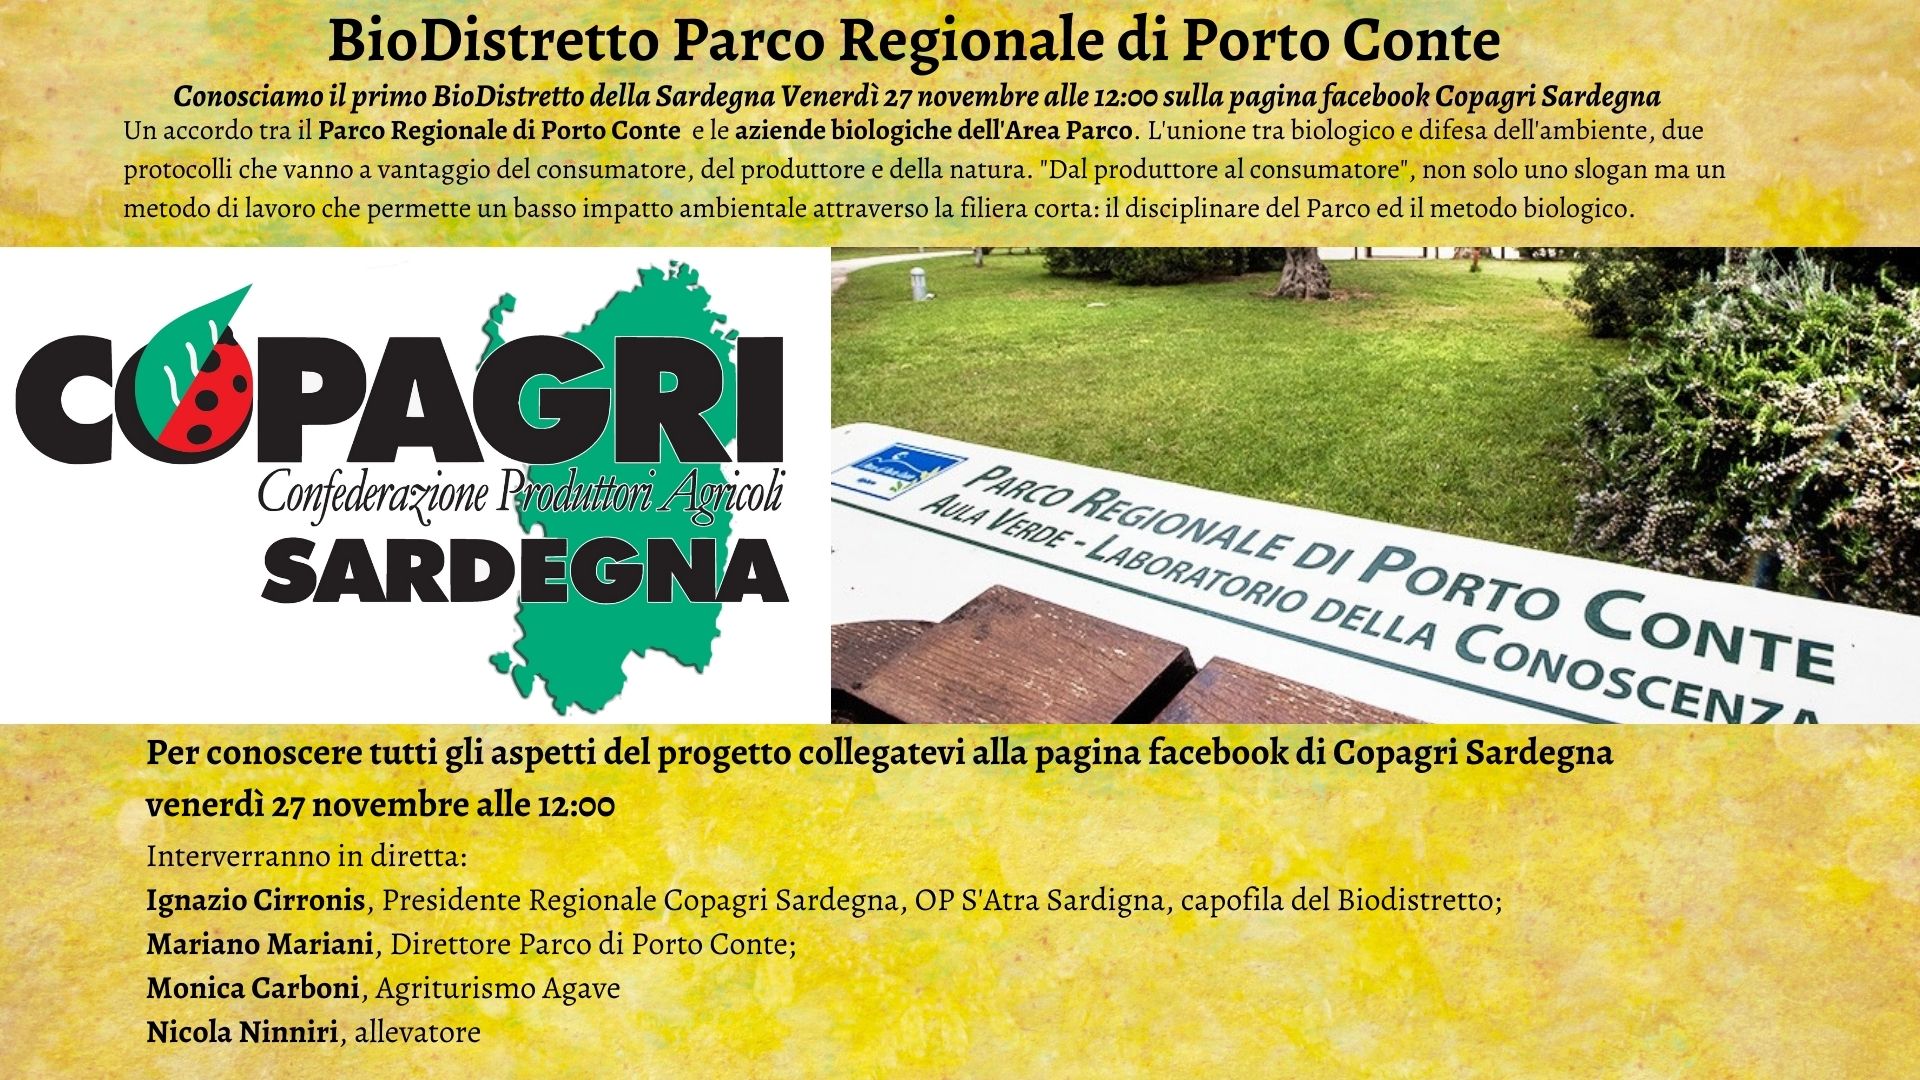 BioDistretto Parco Regionale di Porto Conte, una nuova vita per i cibi biologici in Sardegna. Presentazione venerdì in diretta facebook